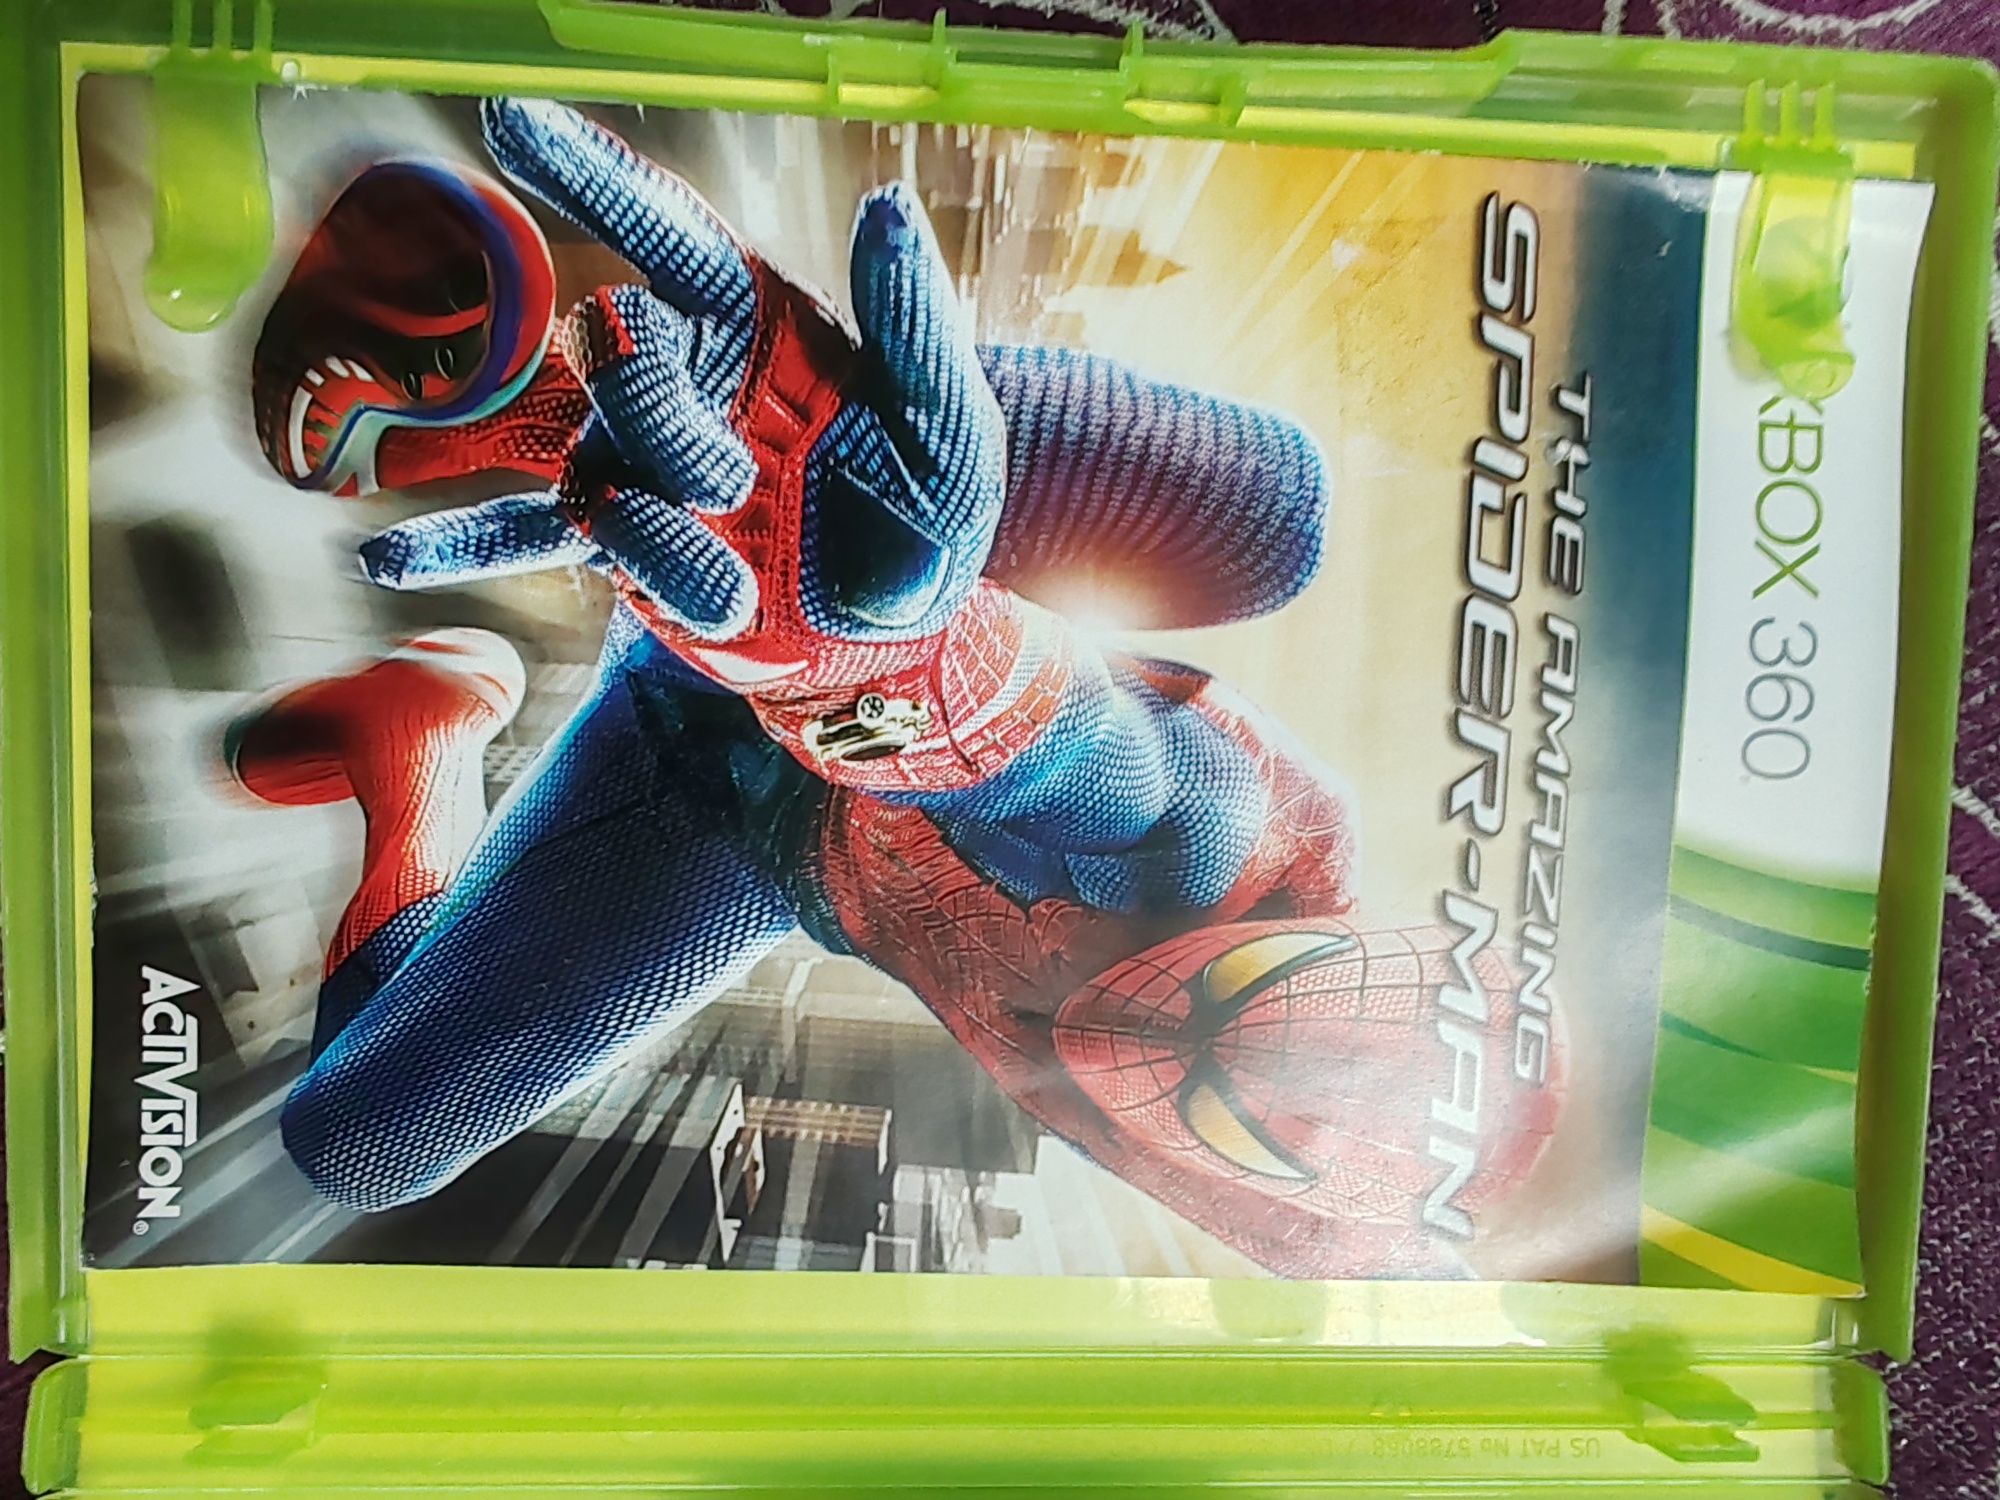 The amazing Spiderman Xbox 360